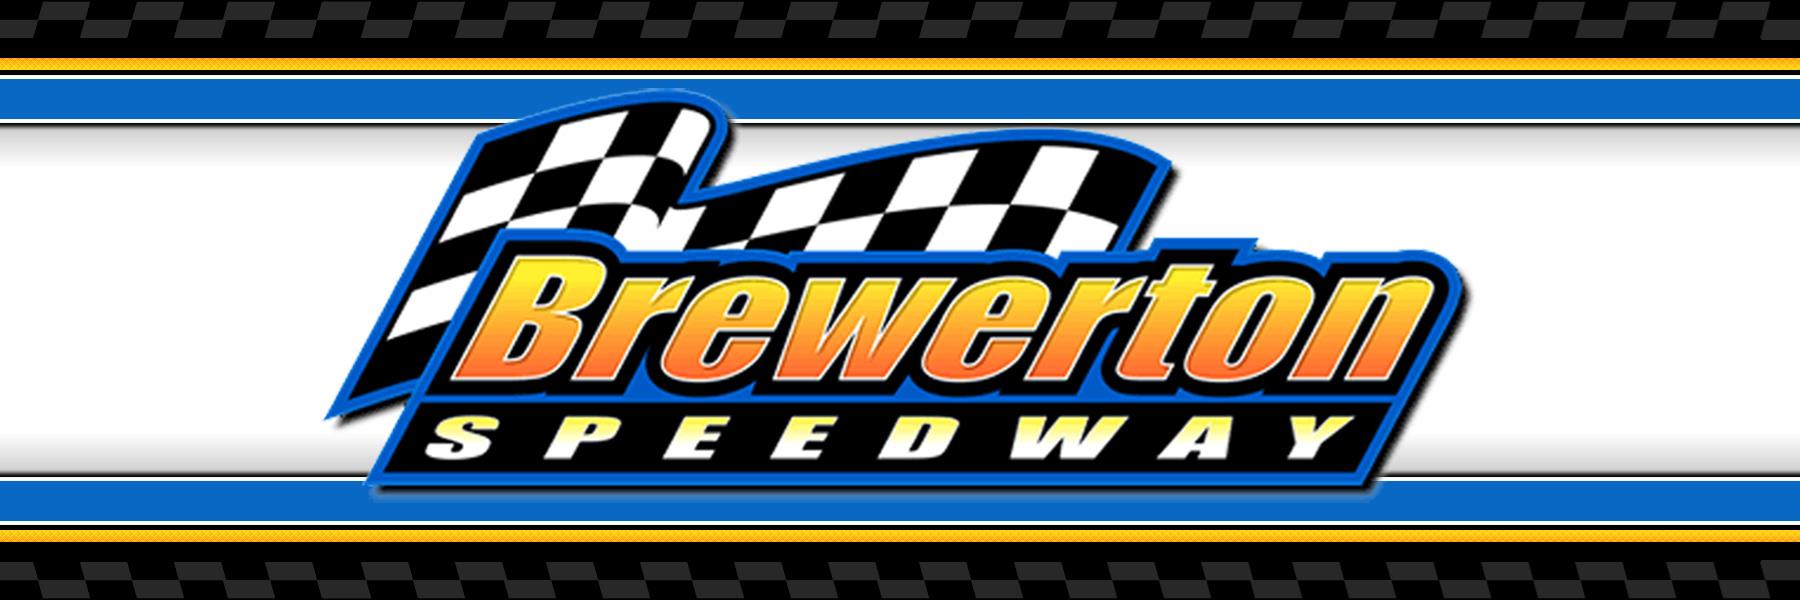 6/24/2022 - Brewerton Speedway